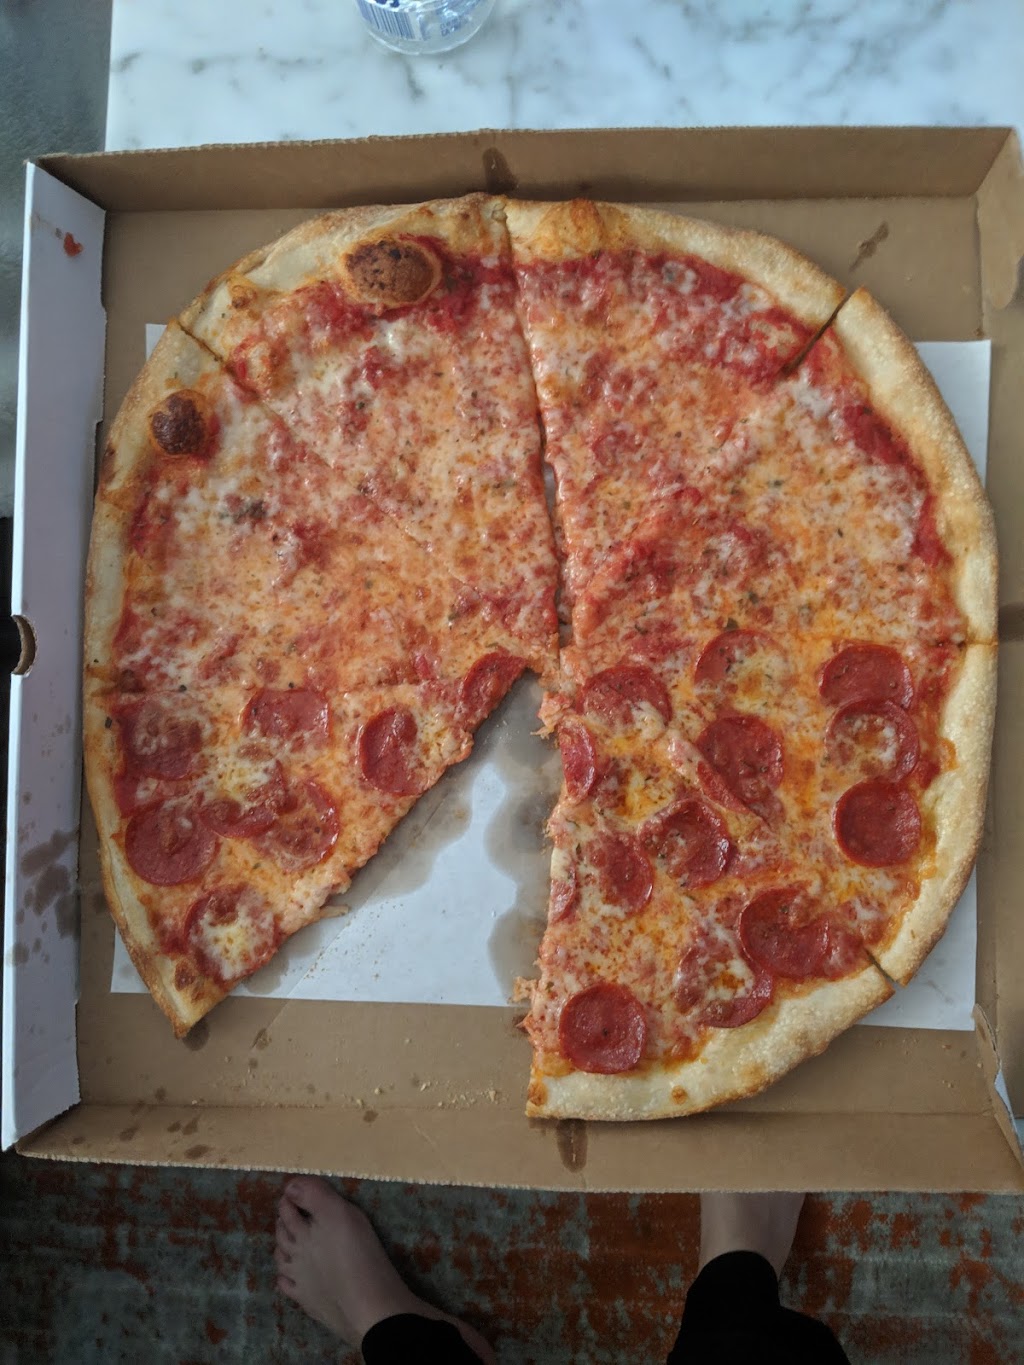 Mamma Ginas Pizza | 61 2nd St, Mineola, NY 11501, USA | Phone: (516) 294-2994